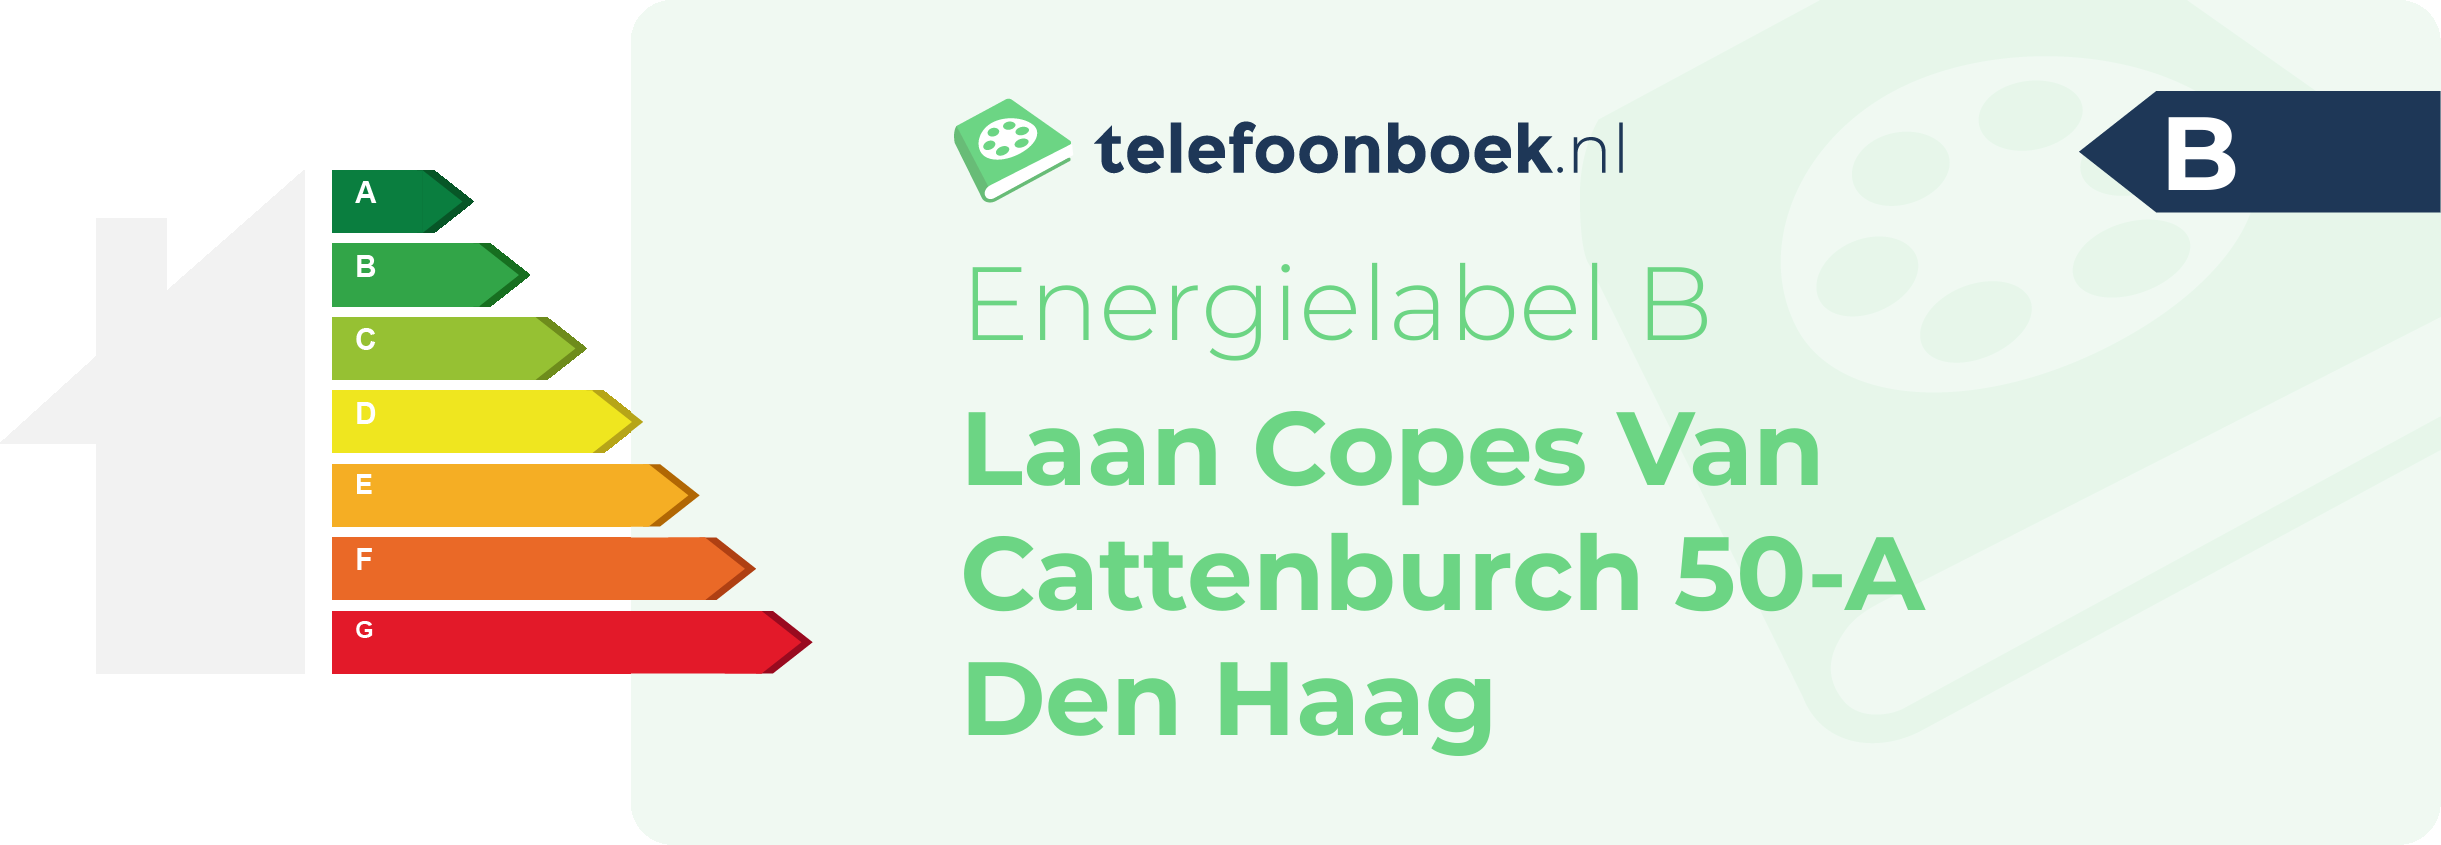 Energielabel Laan Copes Van Cattenburch 50-A Den Haag